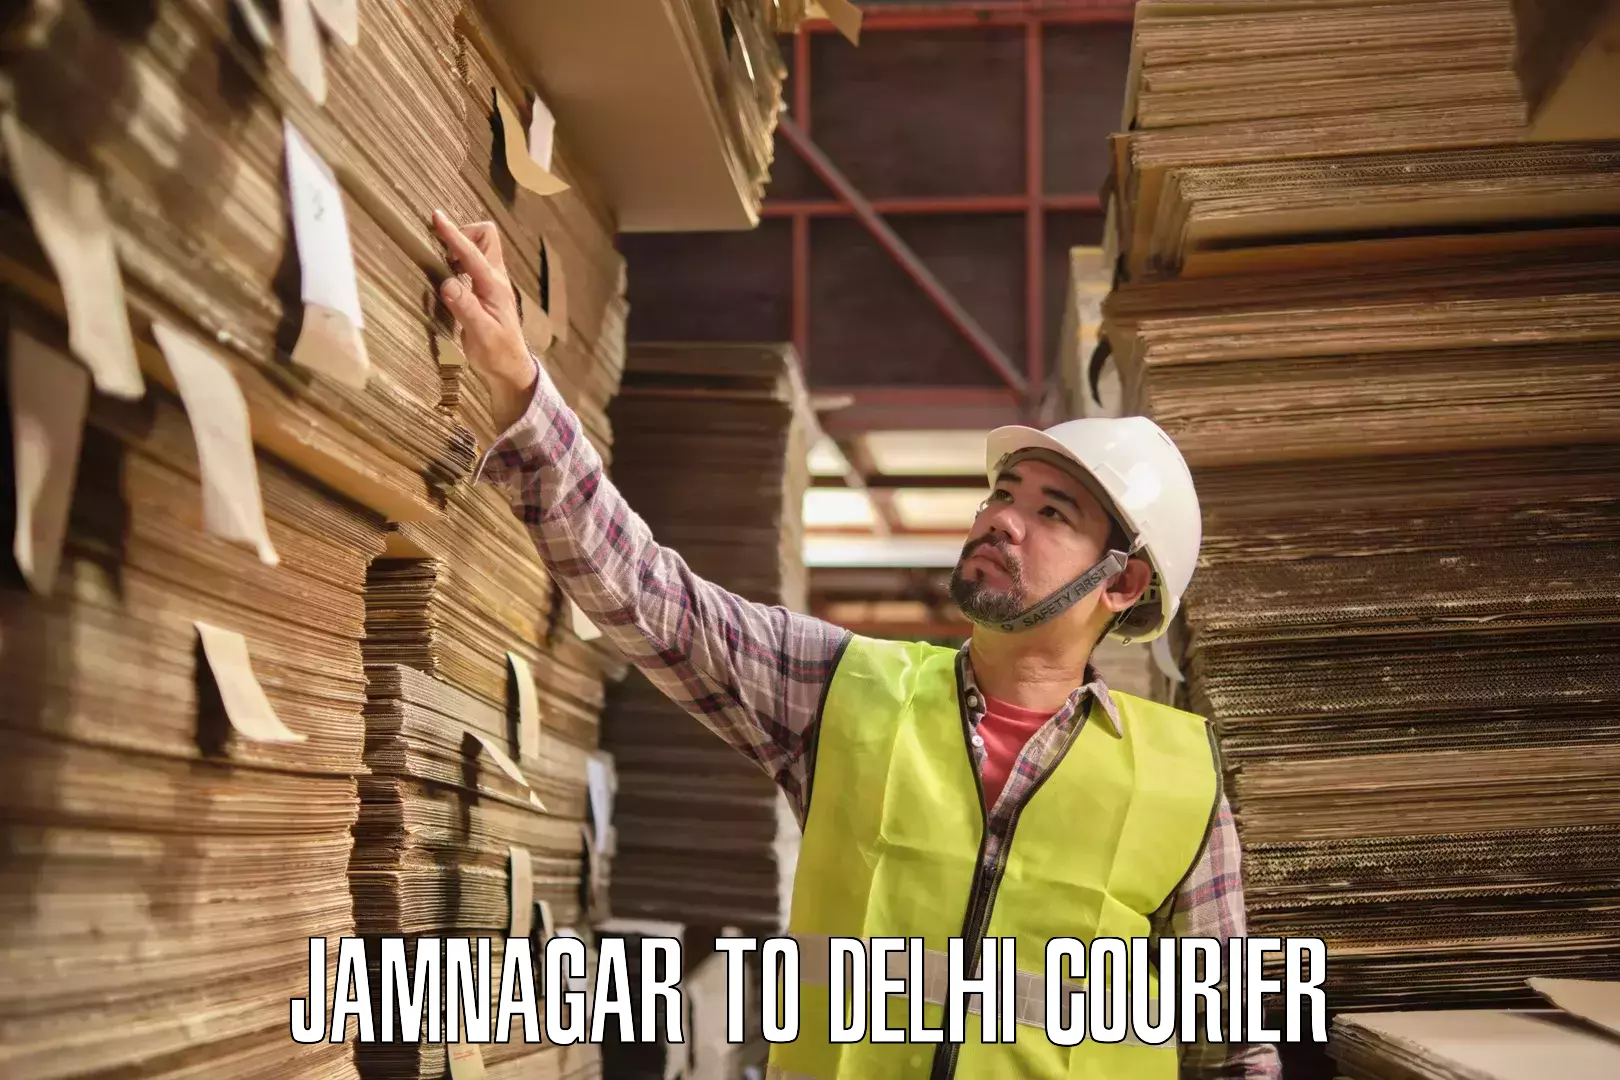 Efficient cargo services Jamnagar to Jamia Hamdard New Delhi